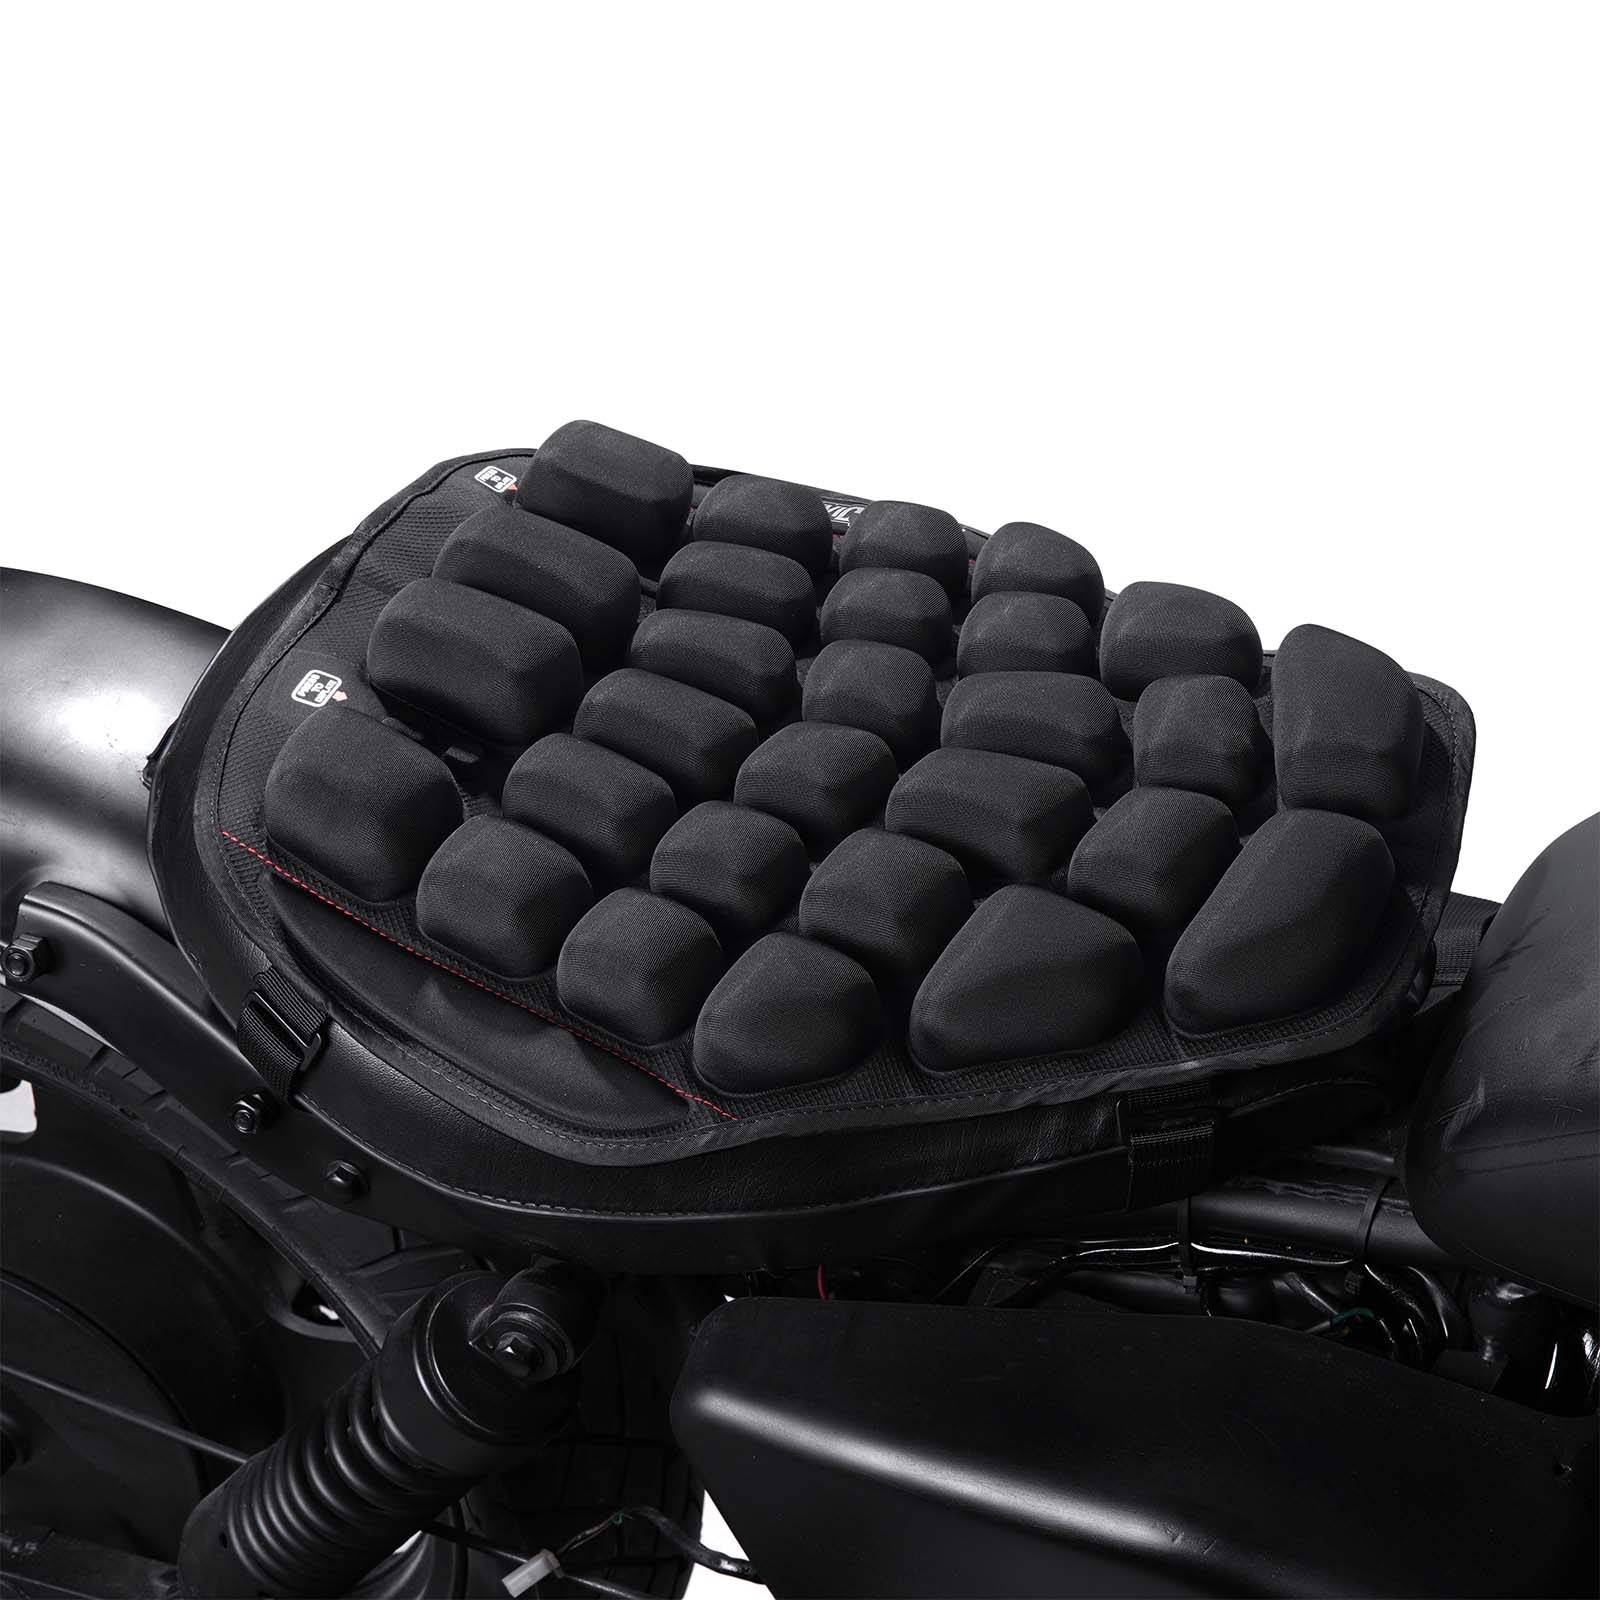 Motorcycle Seat Cushion Air Seats - UBUYMOTOR